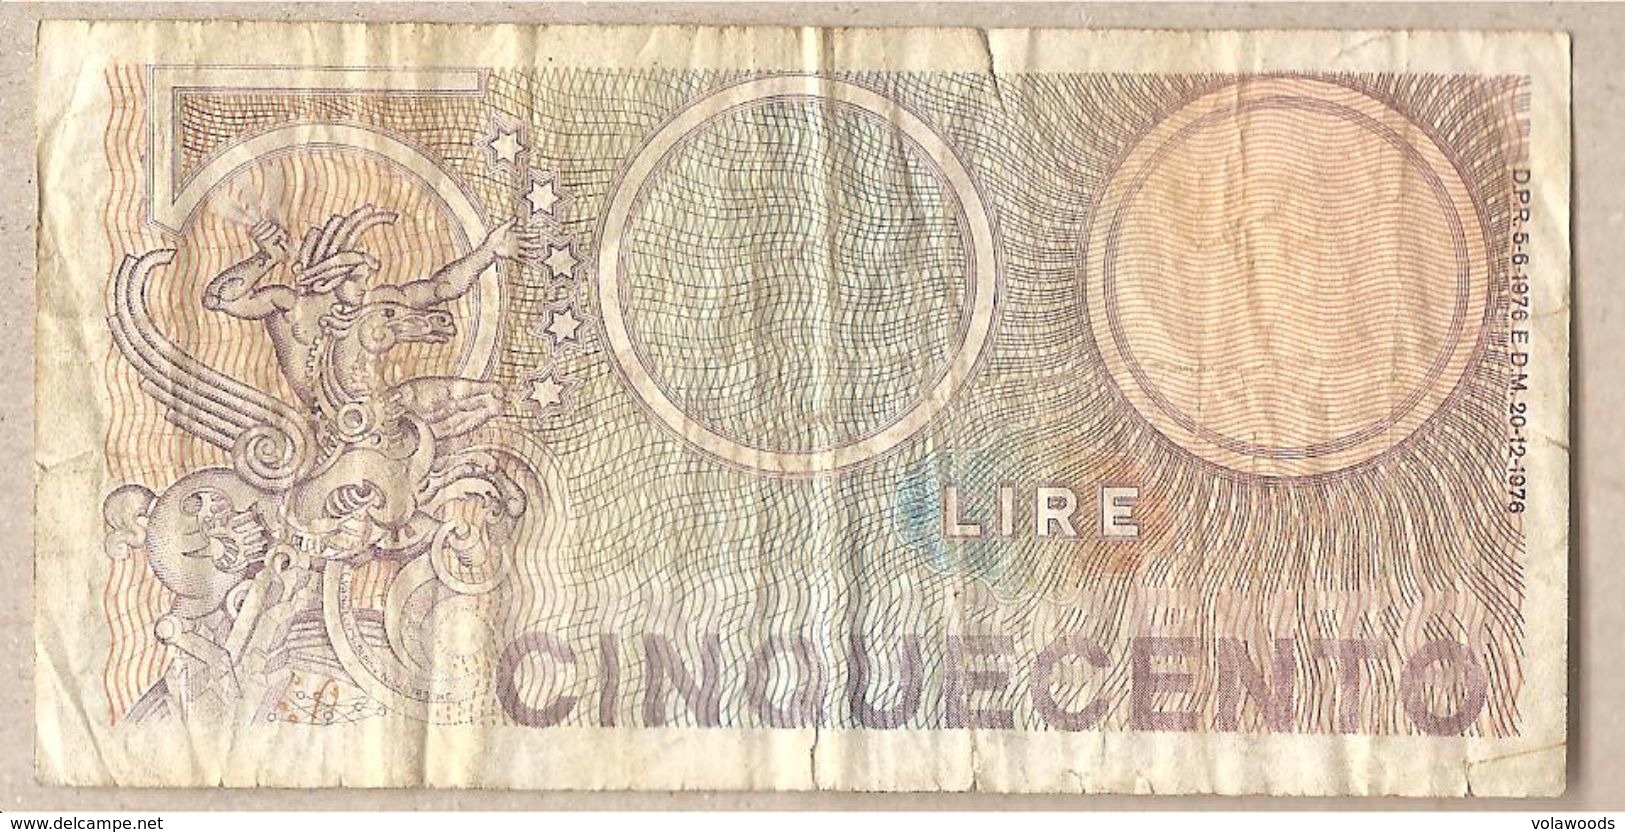 Italia - Banconota Circolata Da 500 Lire "Mercurio" P-95 - 1976 #19 - 500 Lire